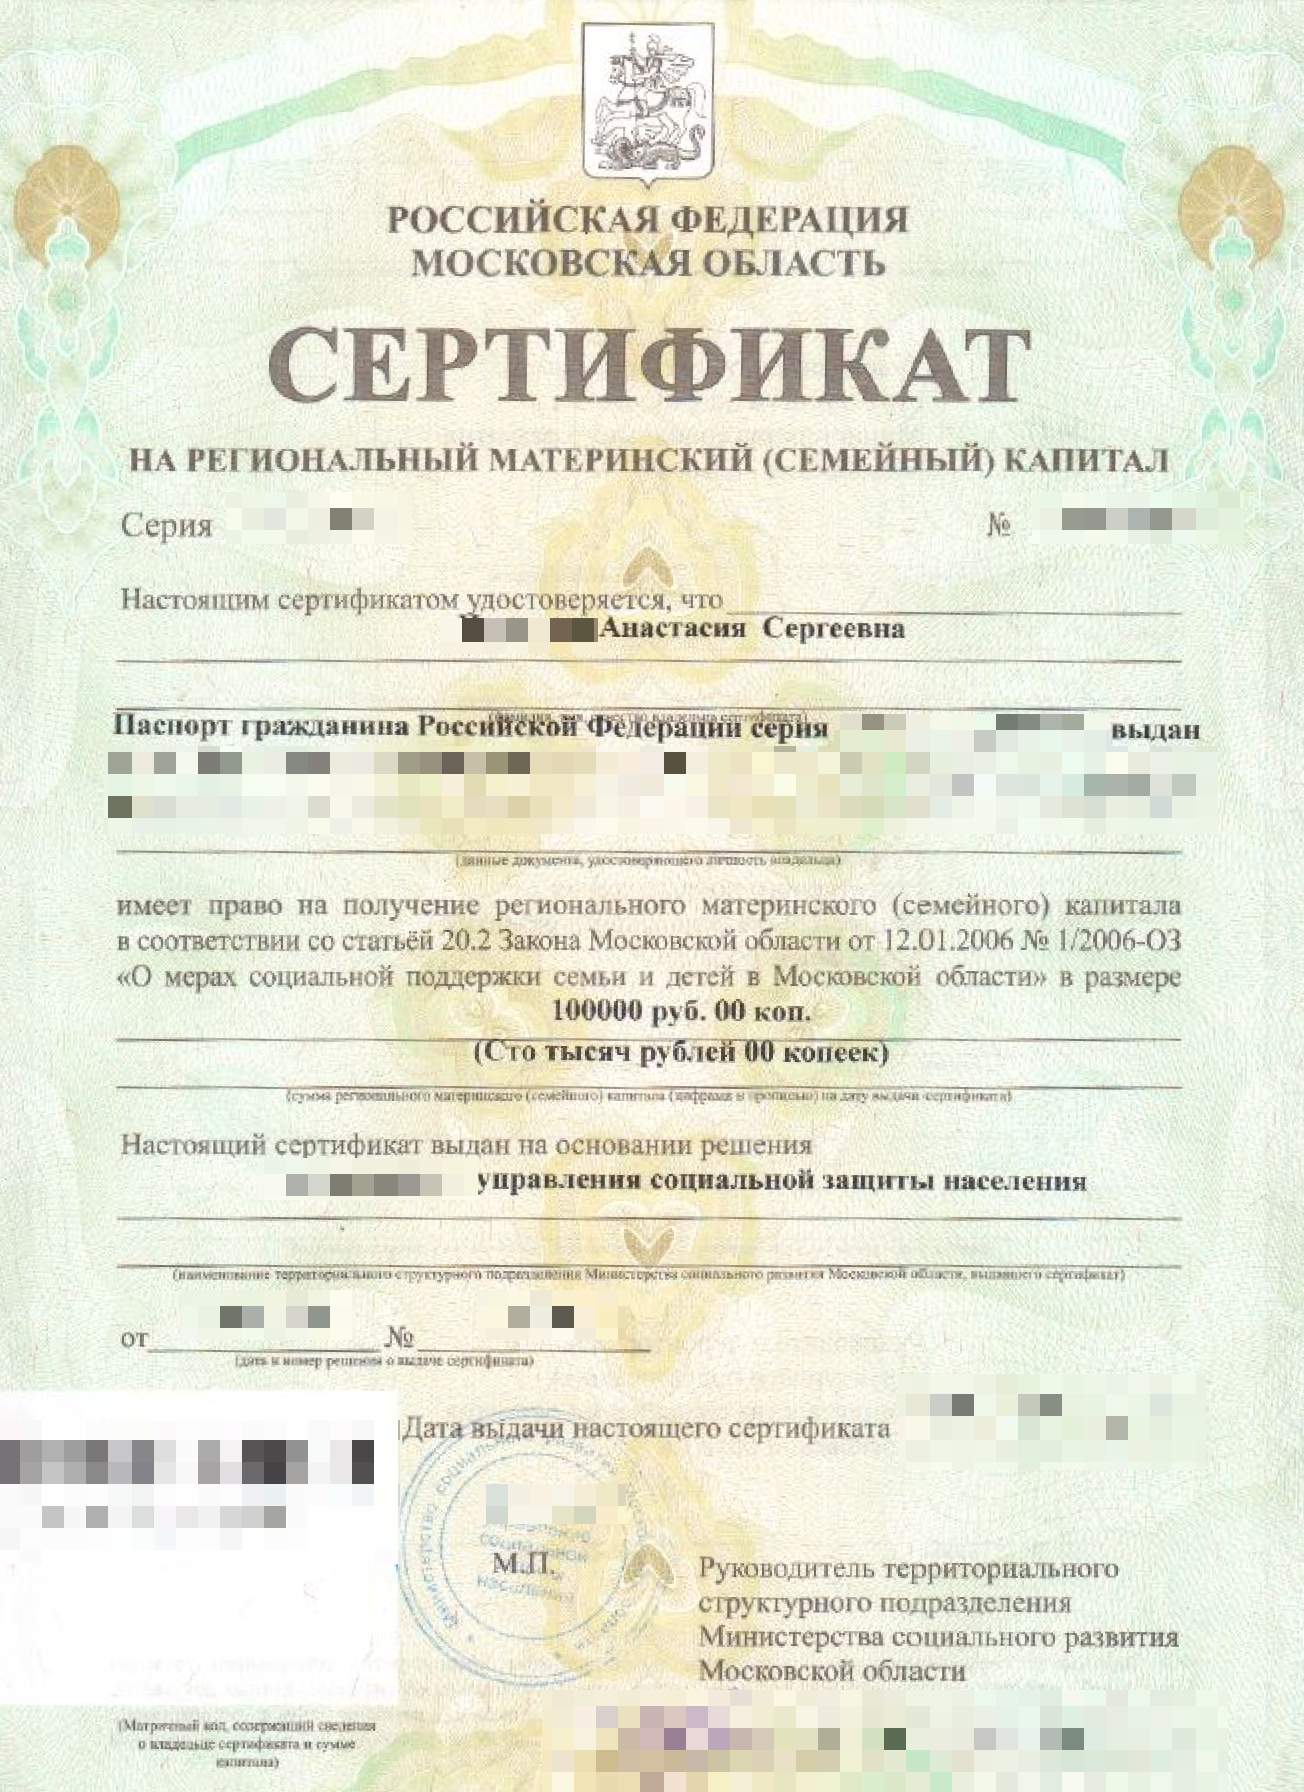 Региональный материнский сертификат, который я получила в 2016 году